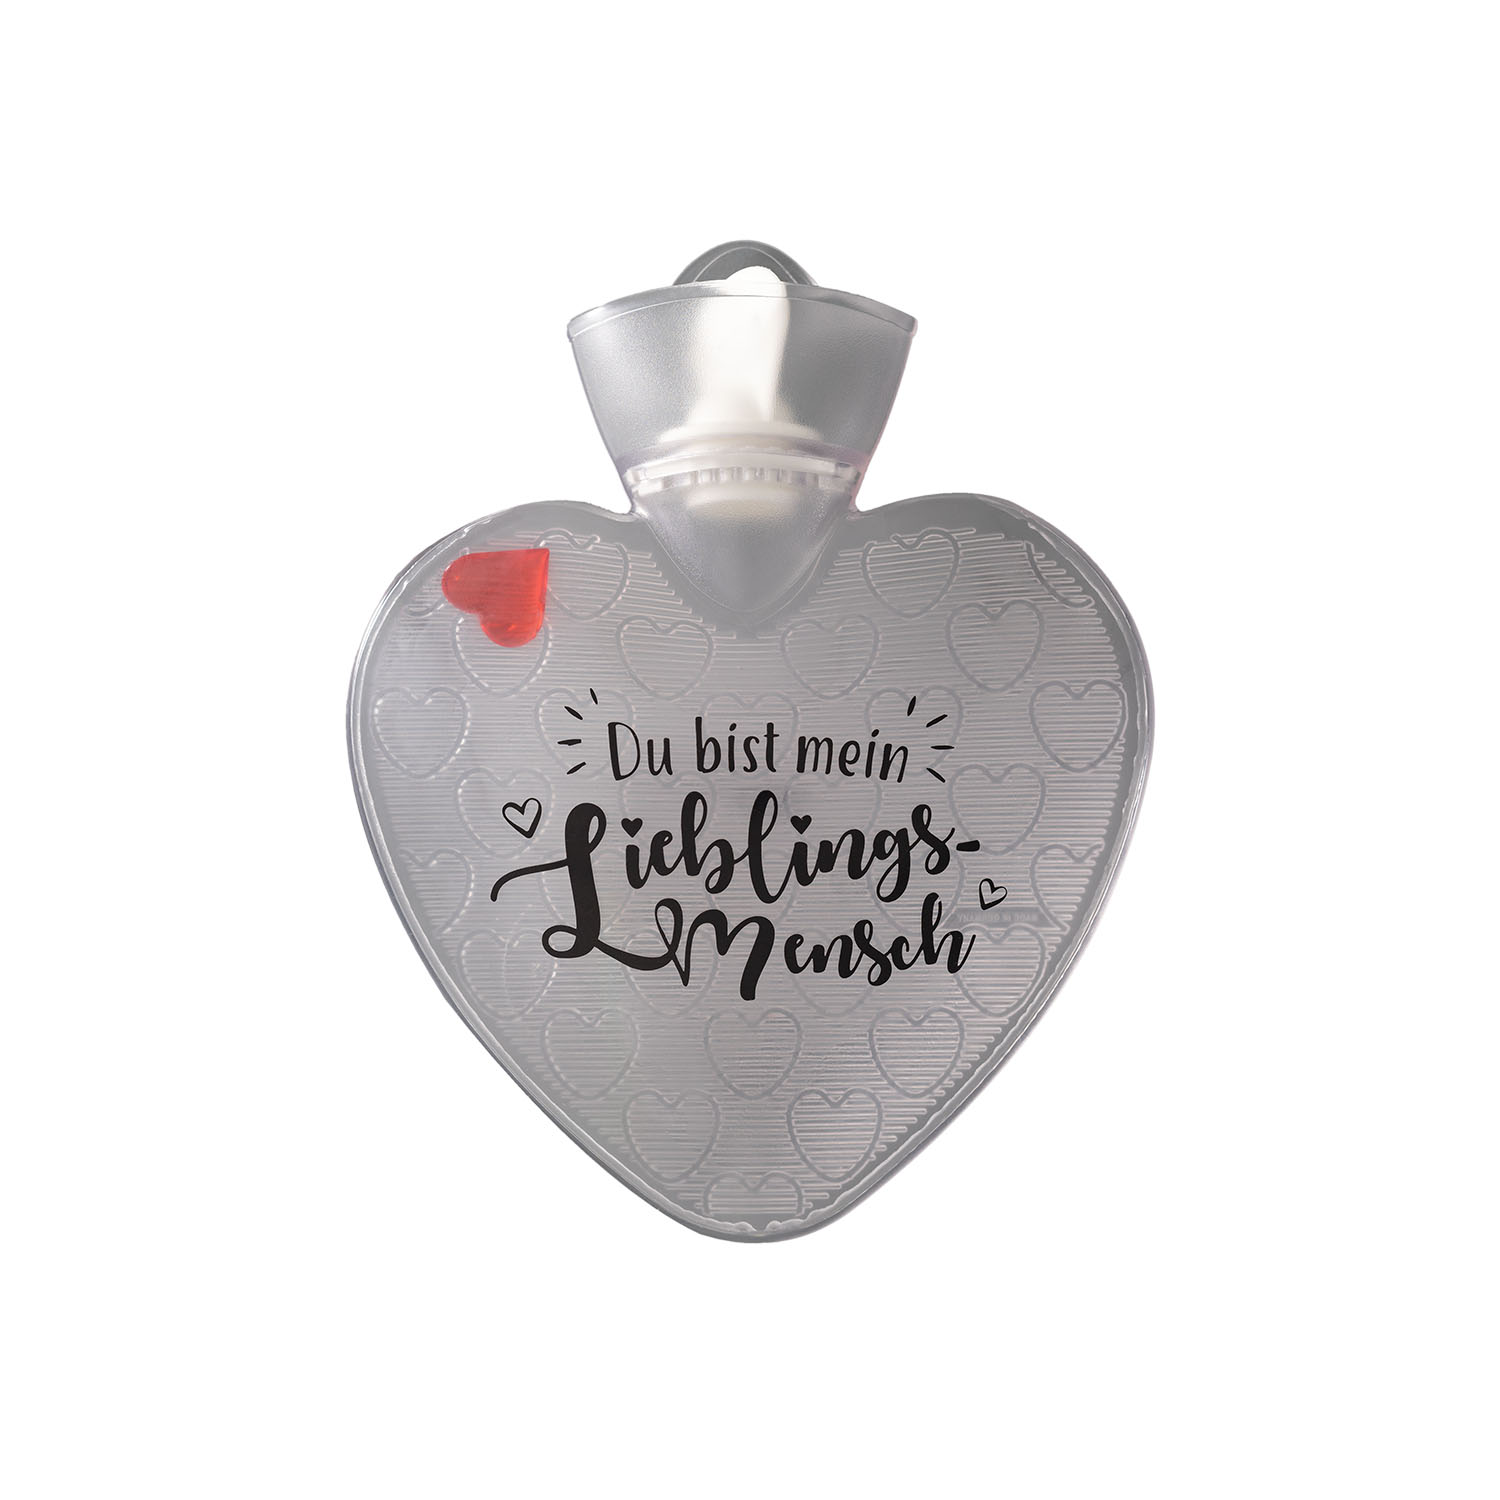 Wärmflasche Herz 1,0 l transparent mit Druck "Du bist mein Lieblingsmensch" und Herzeinlage